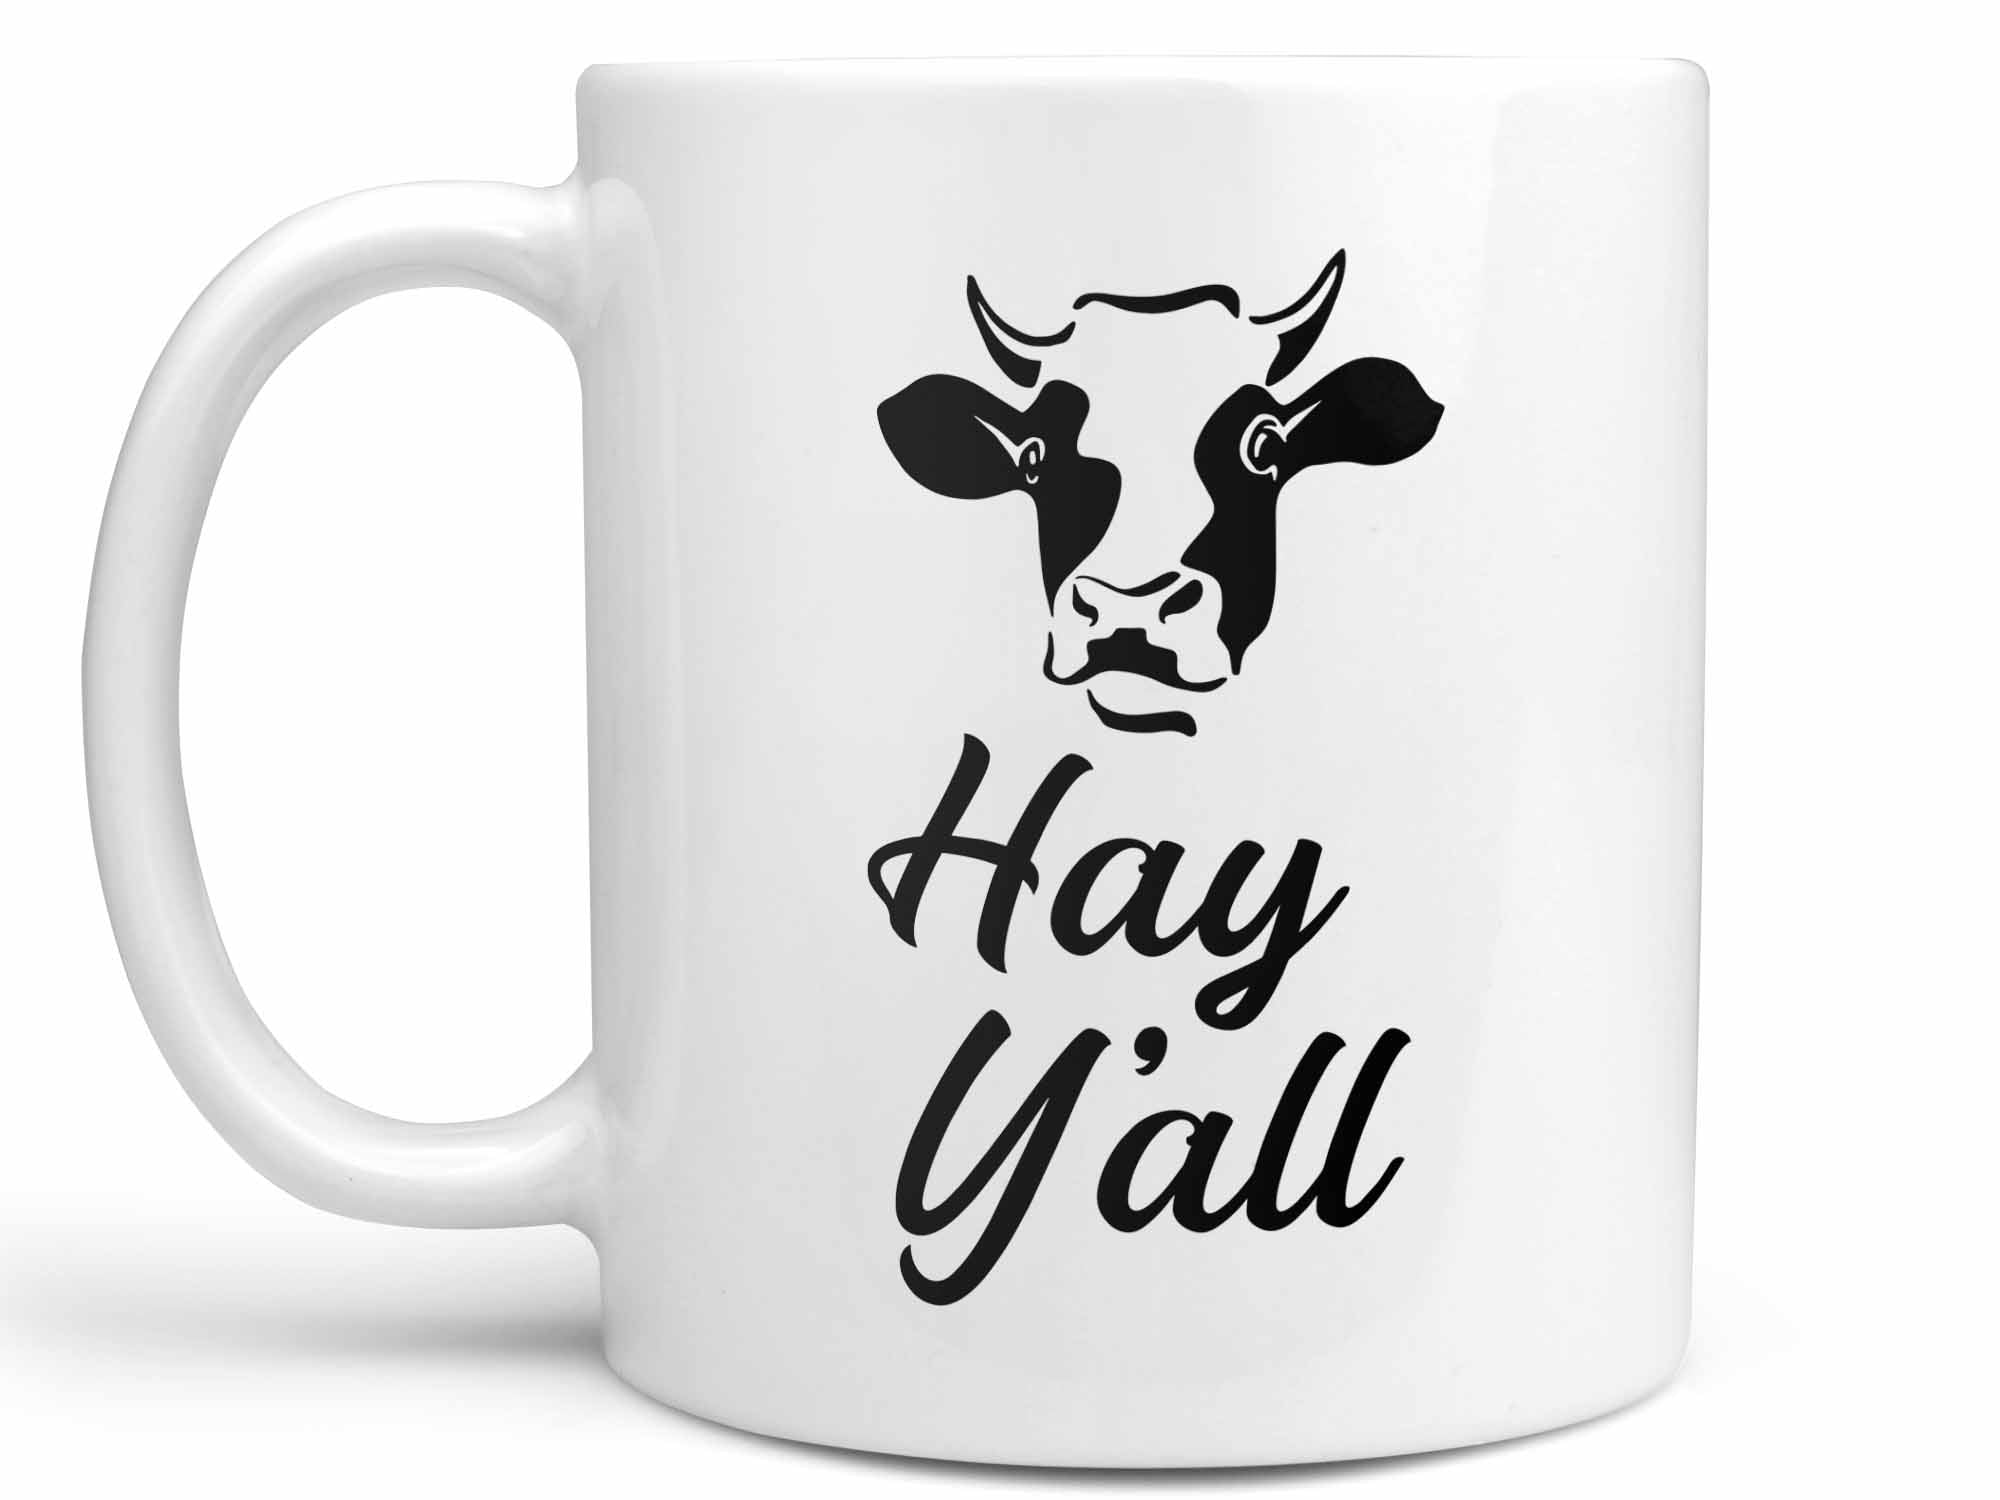 Hay Y'all Coffee Mug